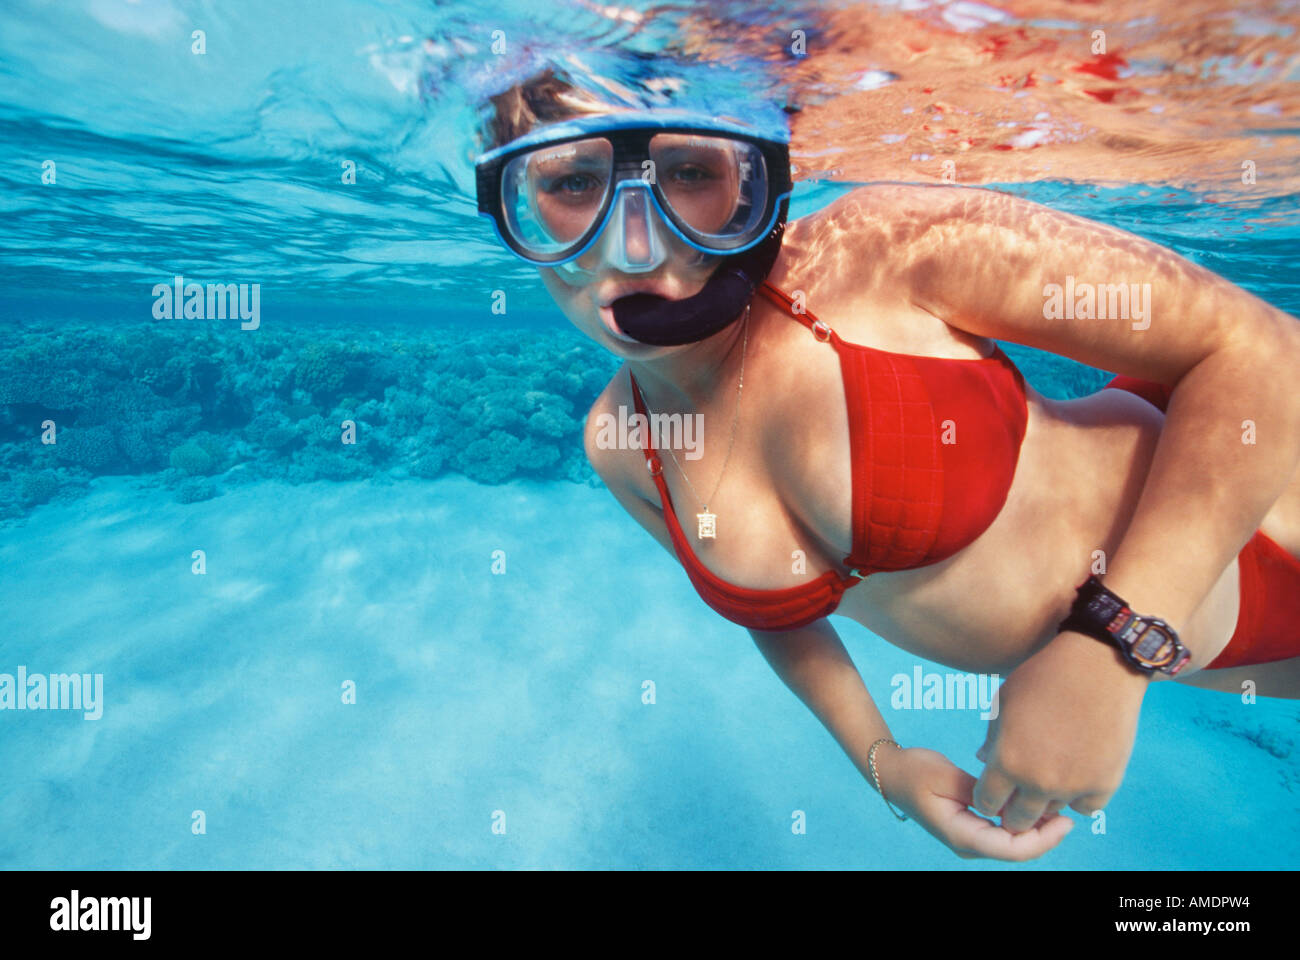 Egypt Red Sea Abu Kefan Reef woman in red bikini snorkeling underwater  Stock Photo - Alamy